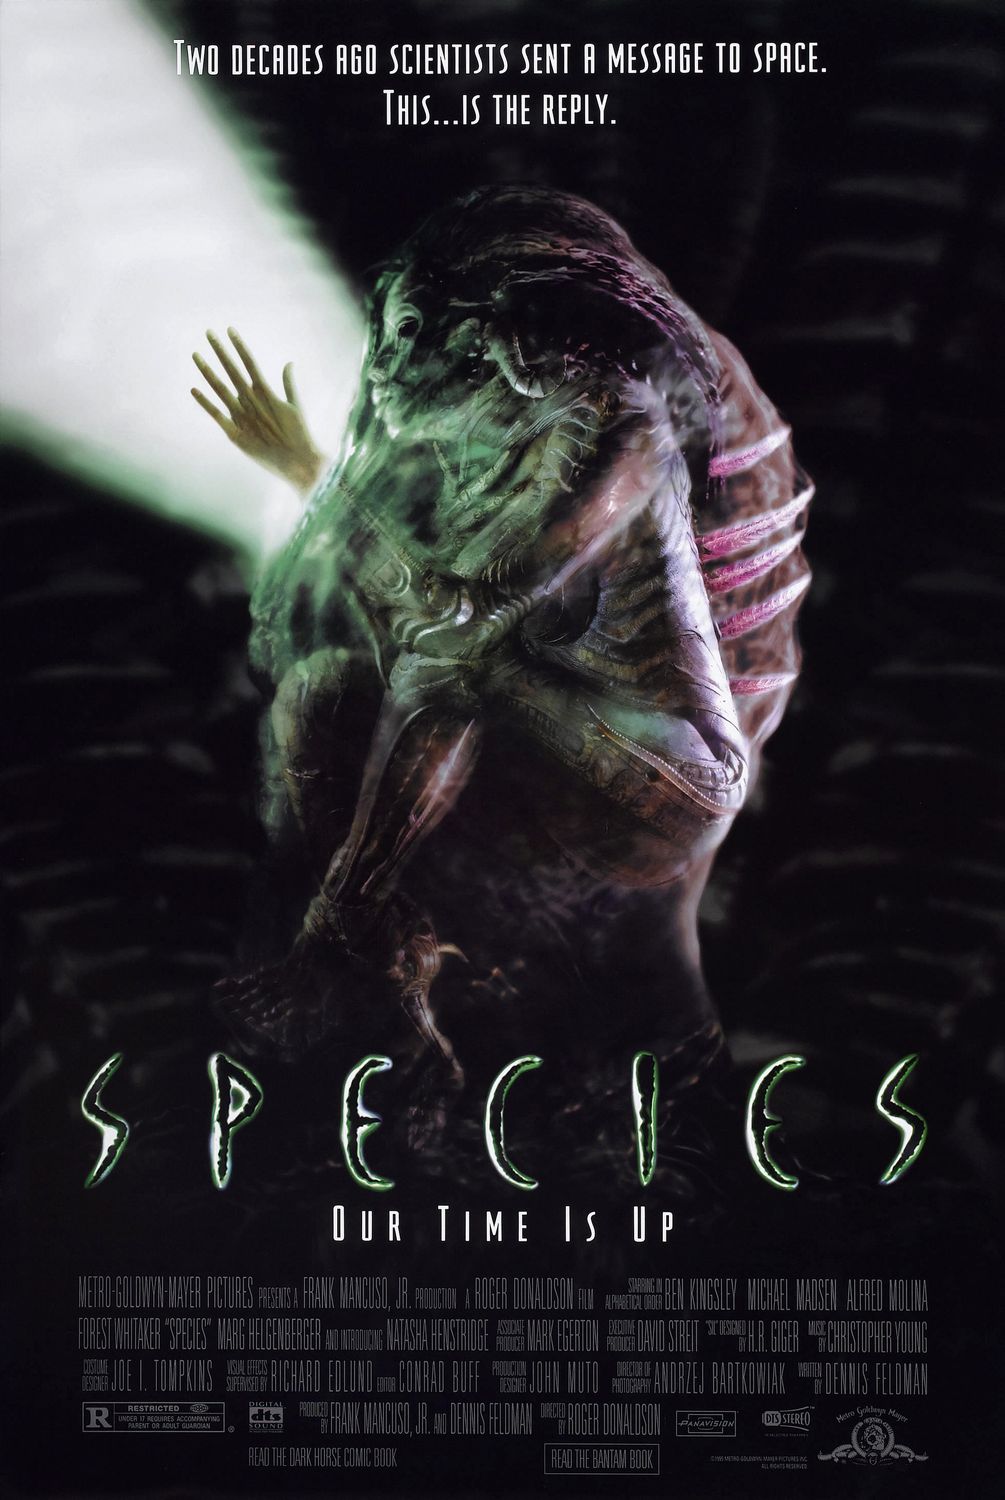 Affiche du film La mutante en juillet 1995, montrant la créature hybride humaine-extraterrestre, avec des pics sur le dos